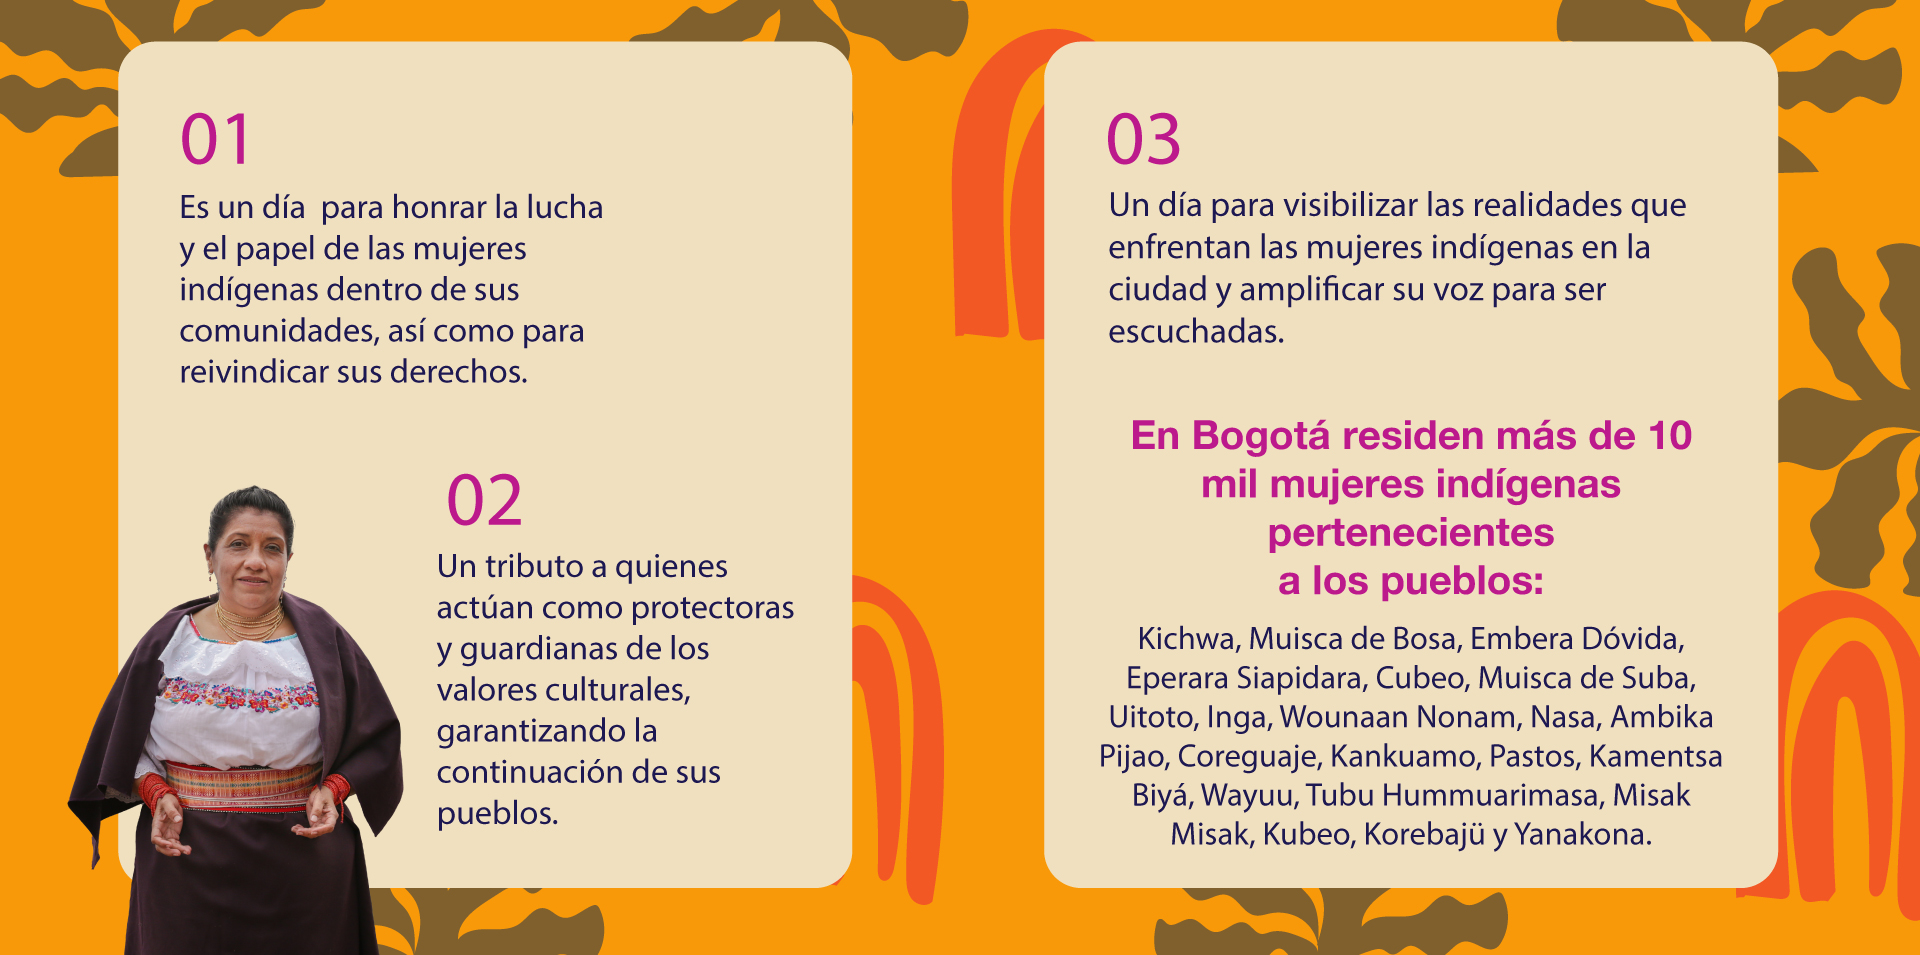 En Bogotá residen más de 10 mil mujeres indígenas pertenecientes a los pueblos.